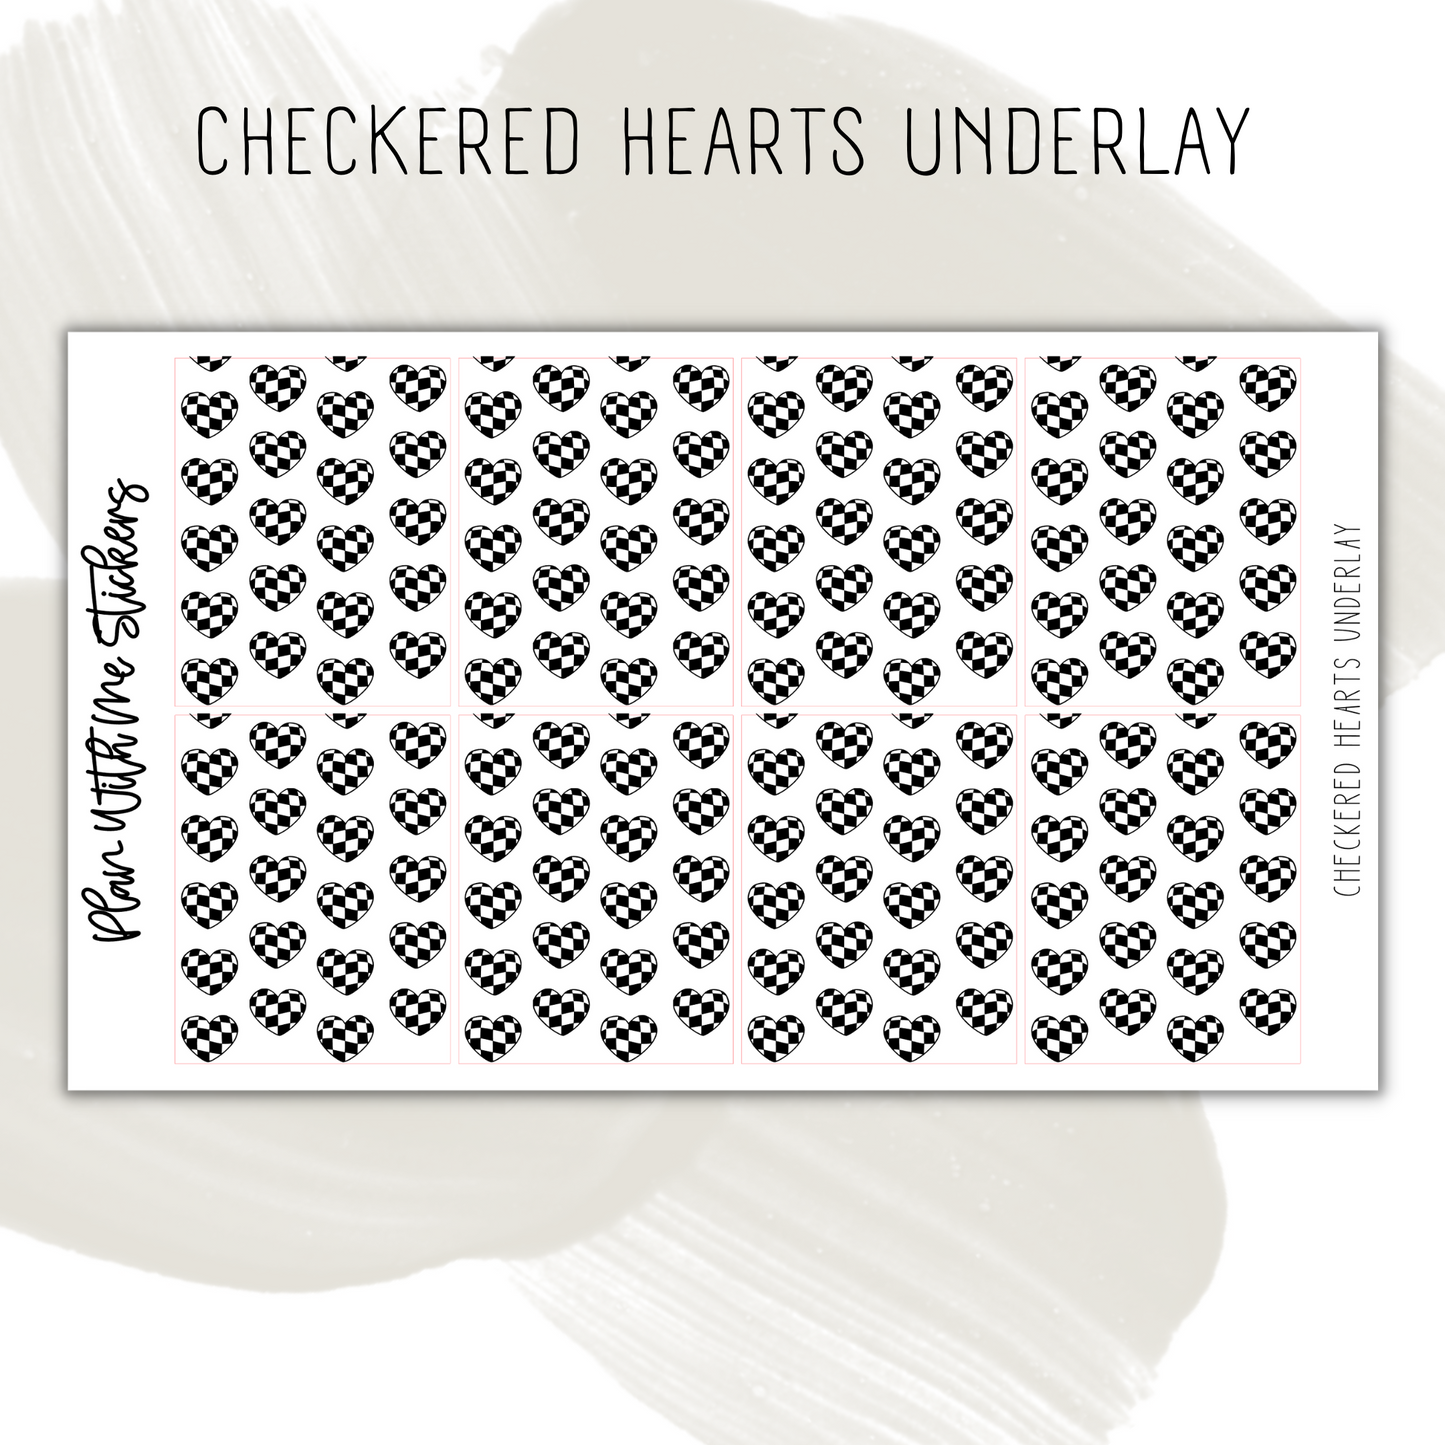 Checkered Hearts Underlay